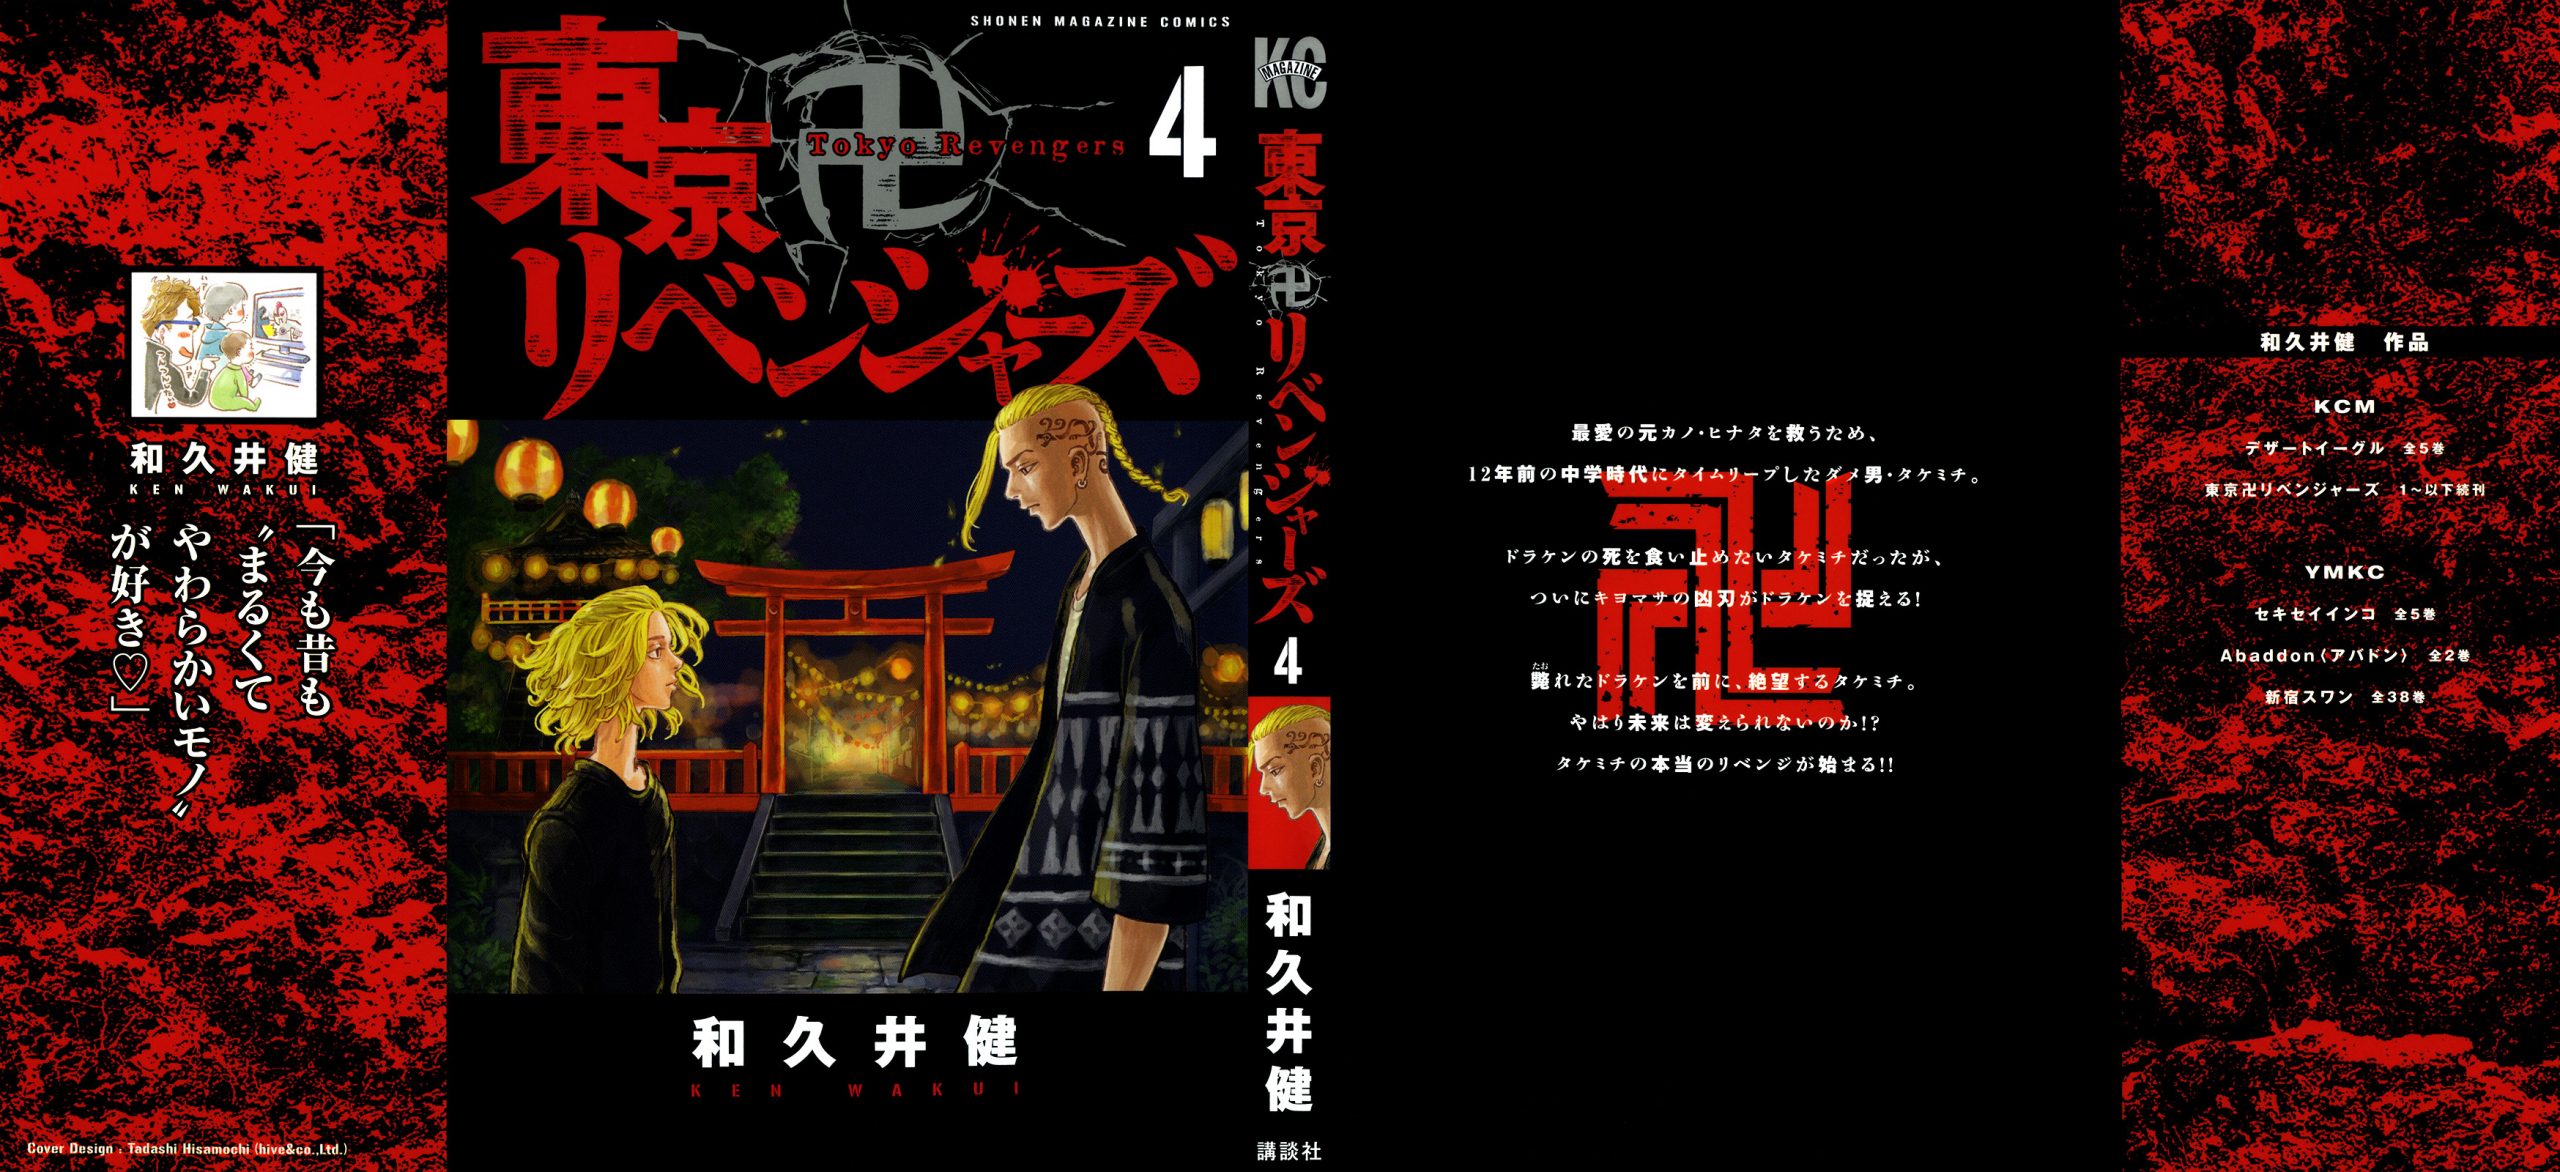 Tokyo Revengers Wallpaper Poster • Wallpaper For You HD Wallpaper For Desktop & Mobile